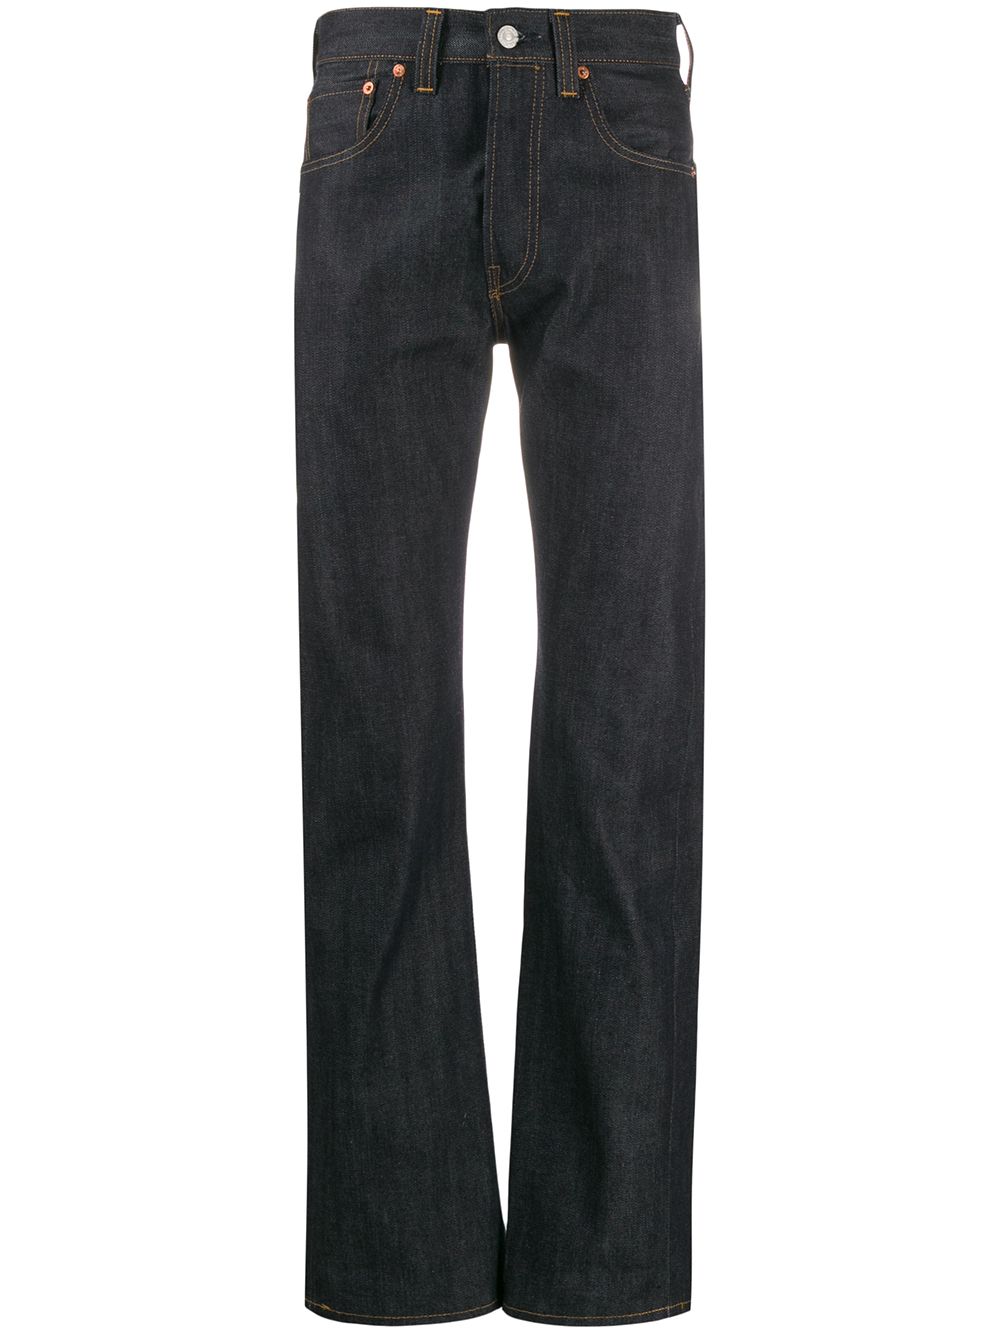 фото Levi's vintage clothing джинсы 1947 501